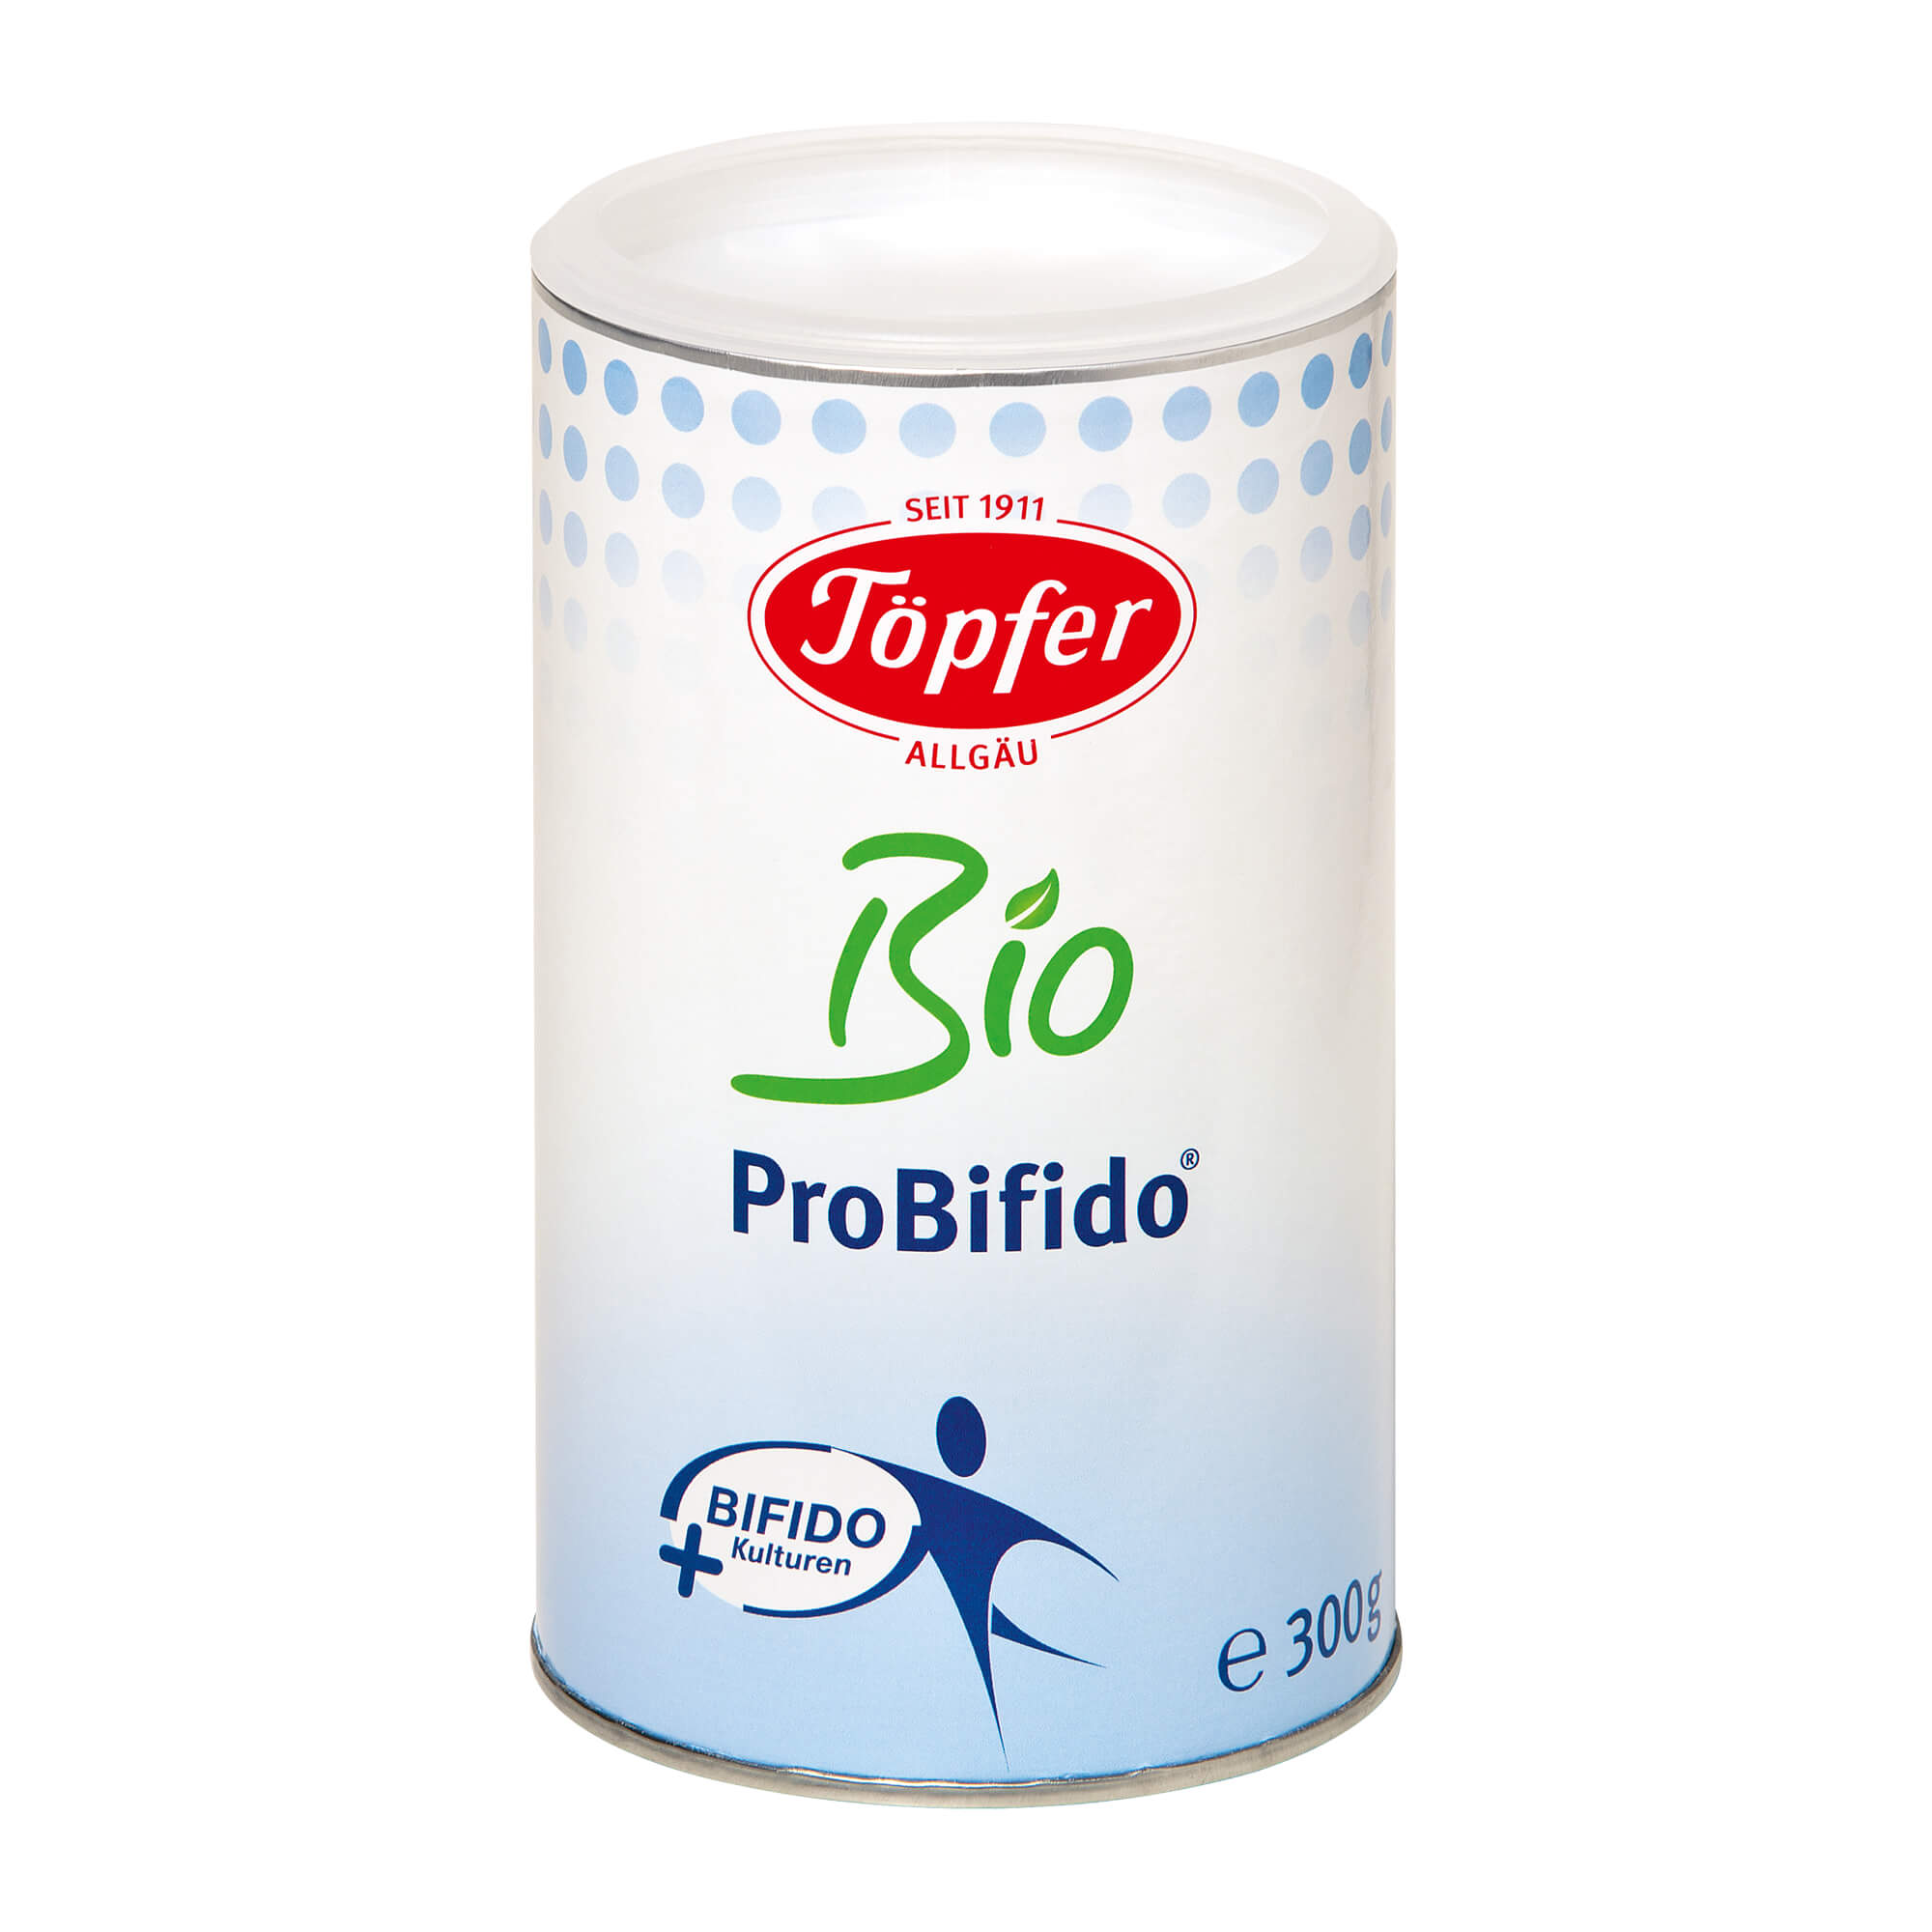 Probiotisches Lebensmittel mit Bifidokulturen.